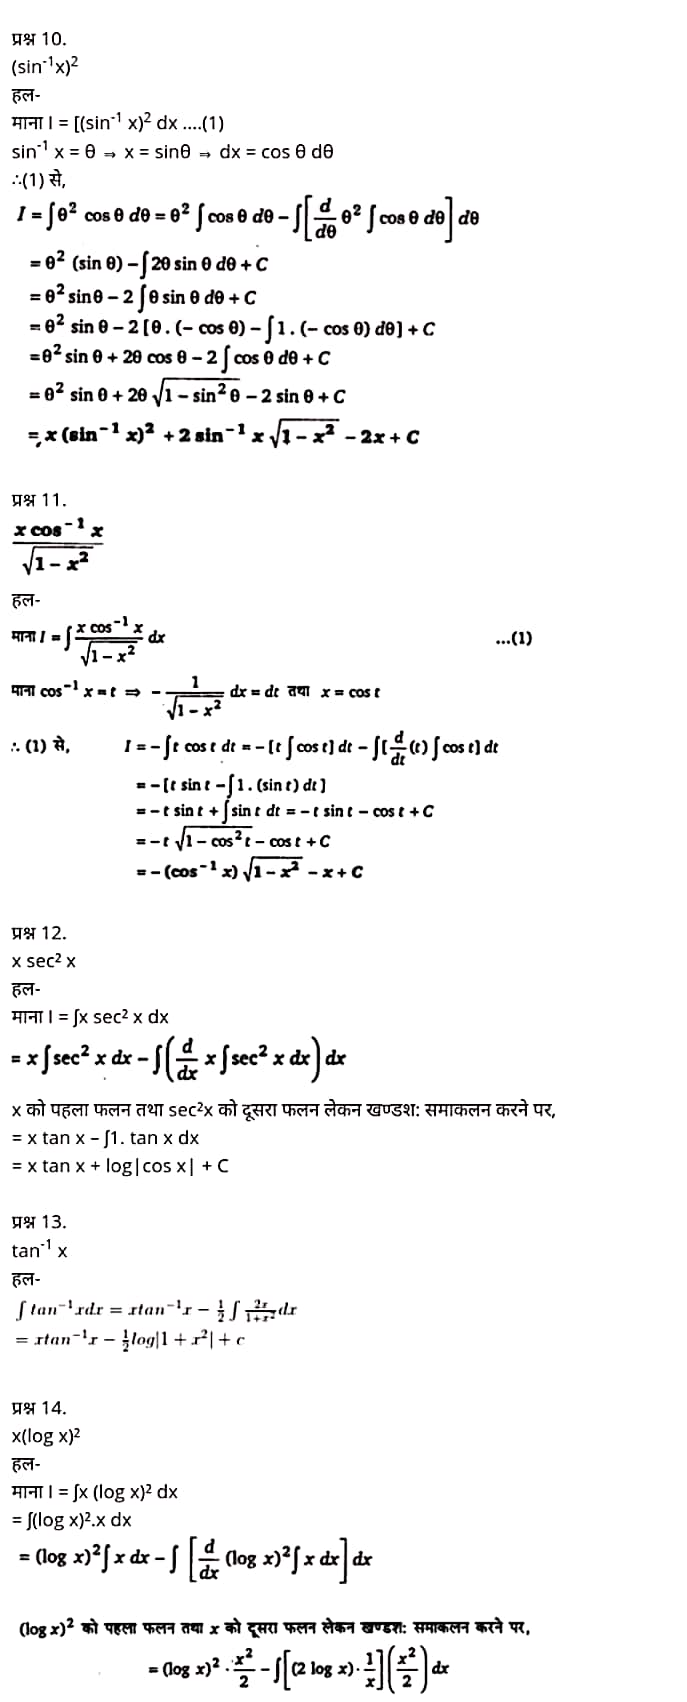 "Class 12 Maths Chapter 7" "Integrals" Hindi Medium,  मैथ्स कक्षा 12 नोट्स pdf,  मैथ्स कक्षा 12 नोट्स 2021 NCERT,  मैथ्स कक्षा 12 PDF,  मैथ्स पुस्तक,  मैथ्स की बुक,  मैथ्स प्रश्नोत्तरी Class 12, 12 वीं मैथ्स पुस्तक RBSE,  बिहार बोर्ड 12 वीं मैथ्स नोट्स,   12th Maths book in hindi, 12th Maths notes in hindi, cbse books for class 12, cbse books in hindi, cbse ncert books, class 12 Maths notes in hindi,  class 12 hindi ncert solutions, Maths 2020, Maths 2021, Maths 2022, Maths book class 12, Maths book in hindi, Maths class 12 in hindi, Maths notes for class 12 up board in hindi, ncert all books, ncert app in hindi, ncert book solution, ncert books class 10, ncert books class 12, ncert books for class 7, ncert books for upsc in hindi, ncert books in hindi class 10, ncert books in hindi for class 12 Maths, ncert books in hindi for class 6, ncert books in hindi pdf, ncert class 12 hindi book, ncert english book, ncert Maths book in hindi, ncert Maths books in hindi pdf, ncert Maths class 12, ncert in hindi,  old ncert books in hindi, online ncert books in hindi,  up board 12th, up board 12th syllabus, up board class 10 hindi book, up board class 12 books, up board class 12 new syllabus, up Board Maths 2020, up Board Maths 2021, up Board Maths 2022, up Board Maths 2023, up board intermediate Maths syllabus, up board intermediate syllabus 2021, Up board Master 2021, up board model paper 2021, up board model paper all subject, up board new syllabus of class 12th Maths, up board paper 2021, Up board syllabus 2021, UP board syllabus 2022,  12 वीं मैथ्स पुस्तक हिंदी में, 12 वीं मैथ्स नोट्स हिंदी में, कक्षा 12 के लिए सीबीएससी पुस्तकें, हिंदी में सीबीएससी पुस्तकें, सीबीएससी  पुस्तकें, कक्षा 12 मैथ्स नोट्स हिंदी में, कक्षा 12 हिंदी एनसीईआरटी समाधान, मैथ्स 2020, मैथ्स 2021, मैथ्स 2022, मैथ्स  बुक क्लास 12, मैथ्स बुक इन हिंदी, बायोलॉजी क्लास 12 हिंदी में, मैथ्स नोट्स इन क्लास 12 यूपी  बोर्ड इन हिंदी, एनसीईआरटी मैथ्स की किताब हिंदी में,  बोर्ड 12 वीं तक, 12 वीं तक की पाठ्यक्रम,